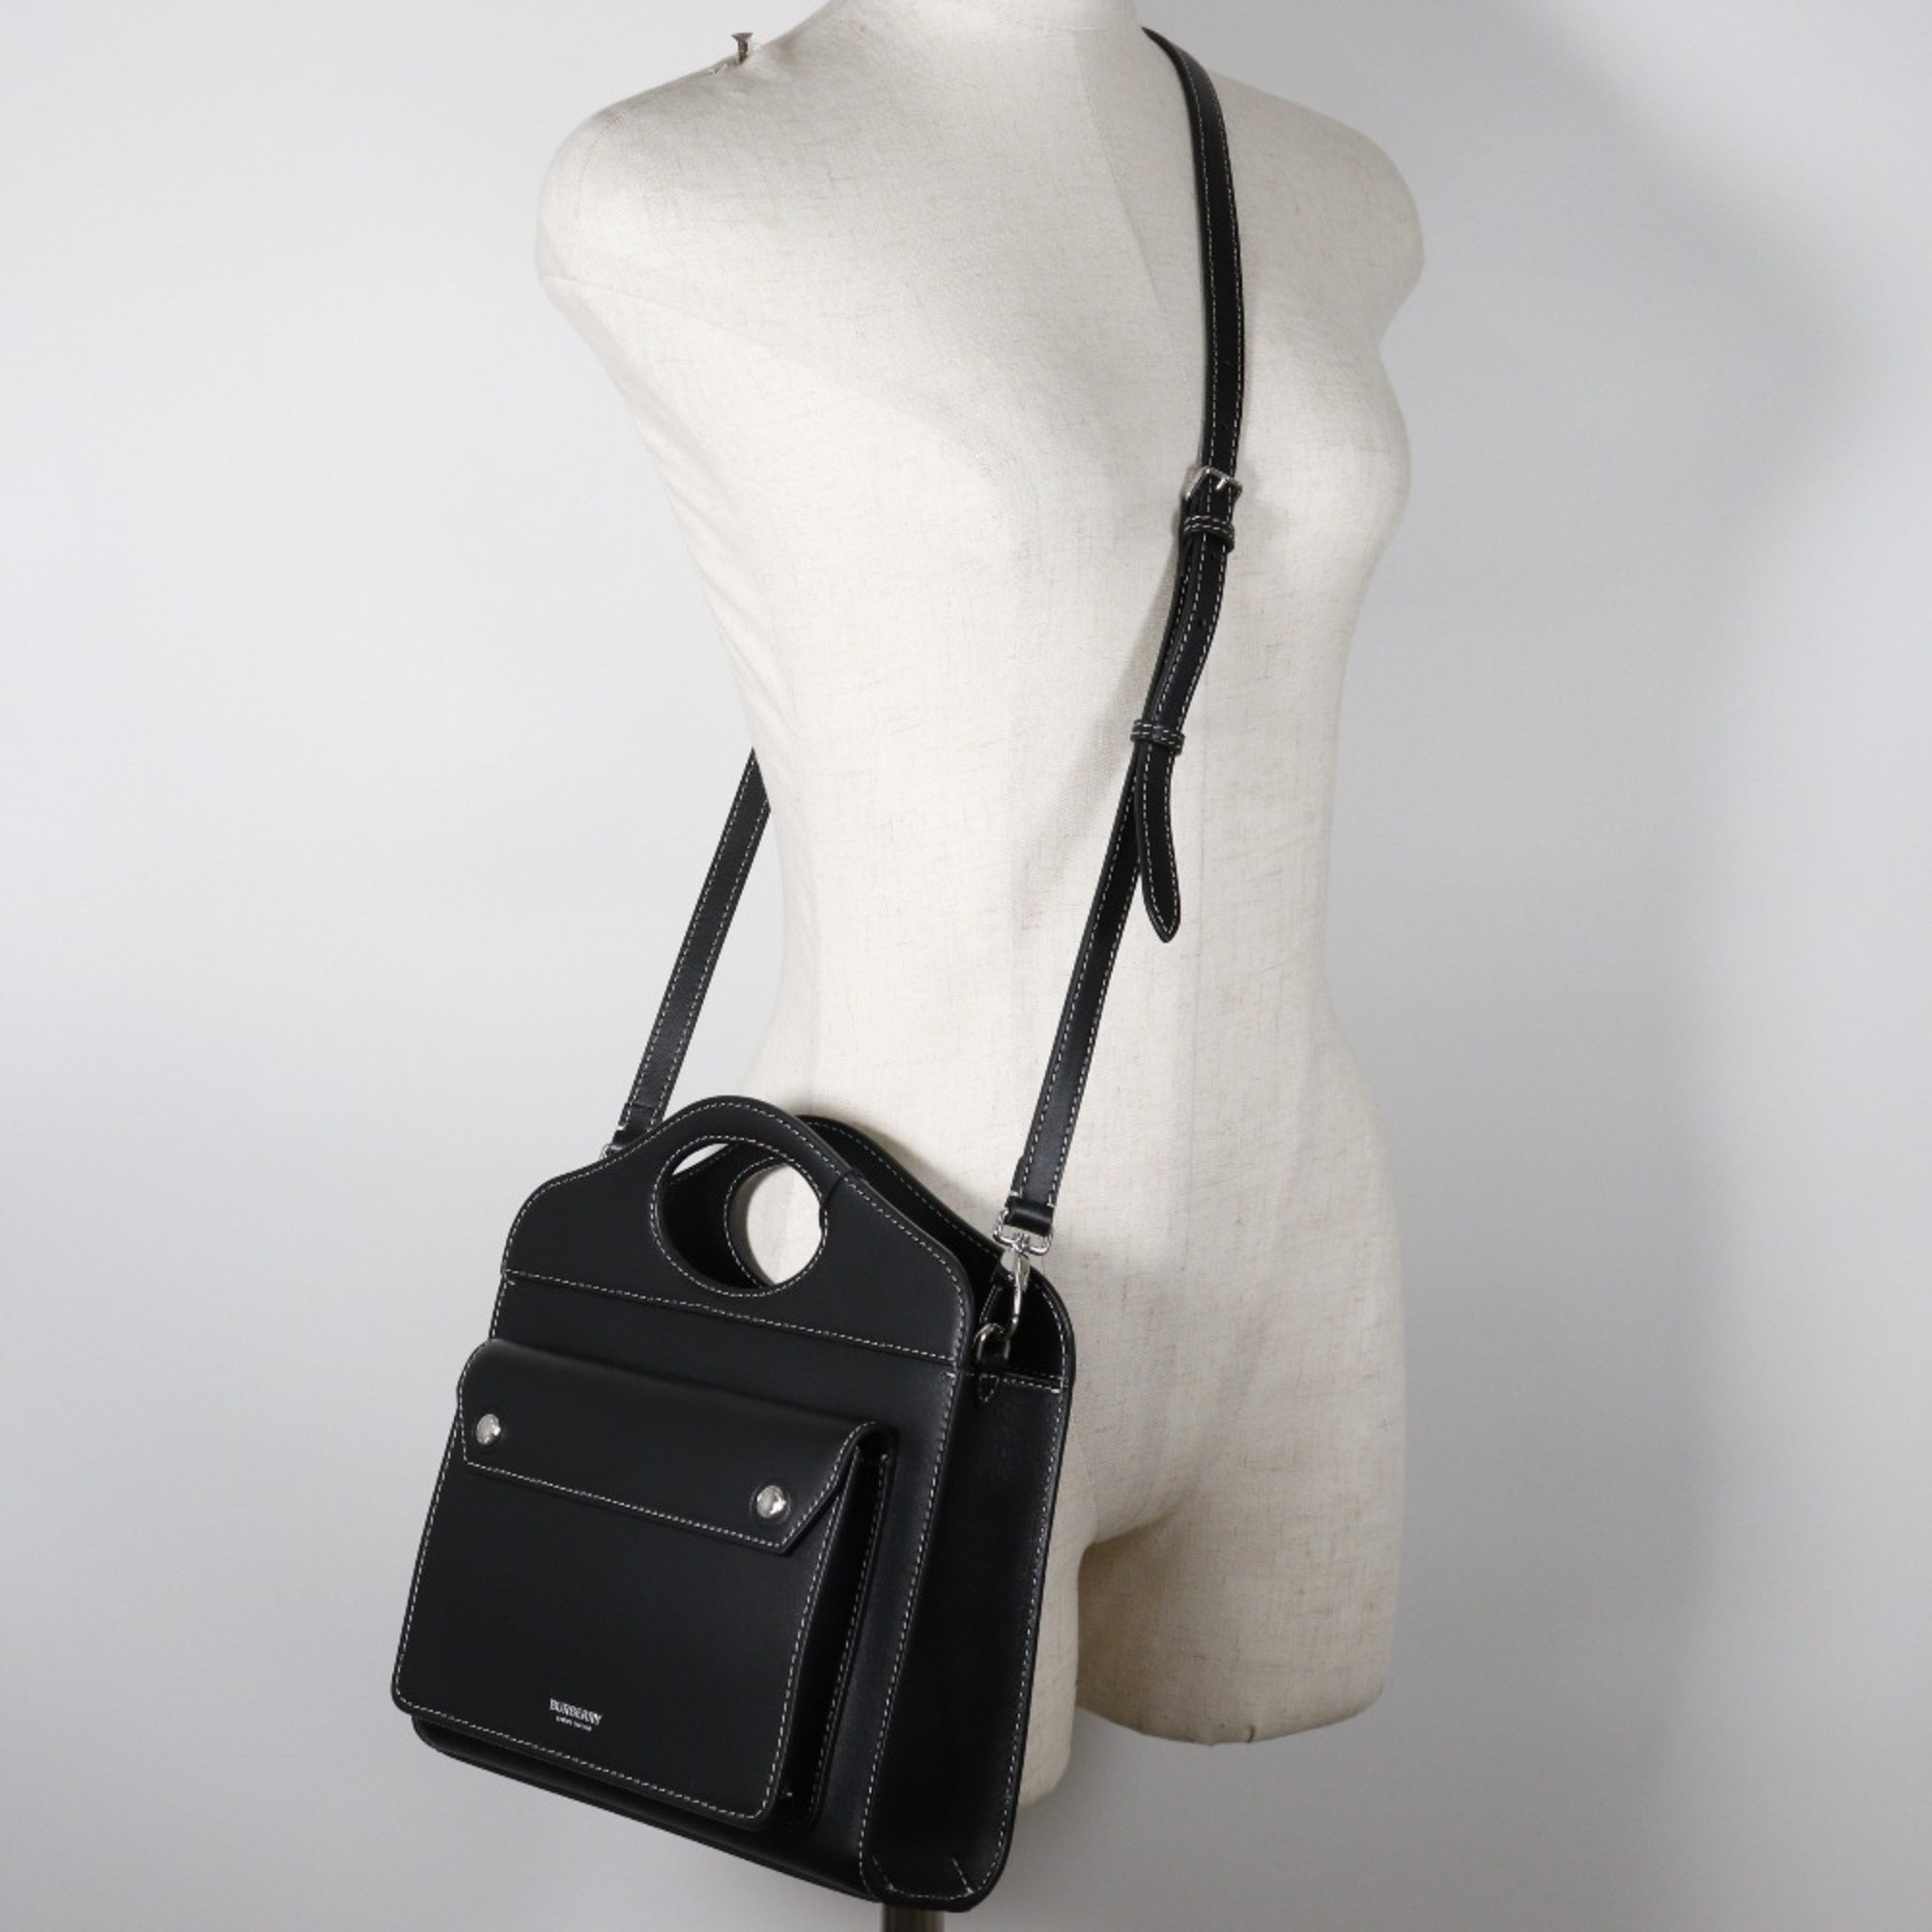 BURBERRY 2WAY Shoulder Handbag 8040892 Leather Made in Italy Black Crossbody 2way Open 2WAYShoulder Women's